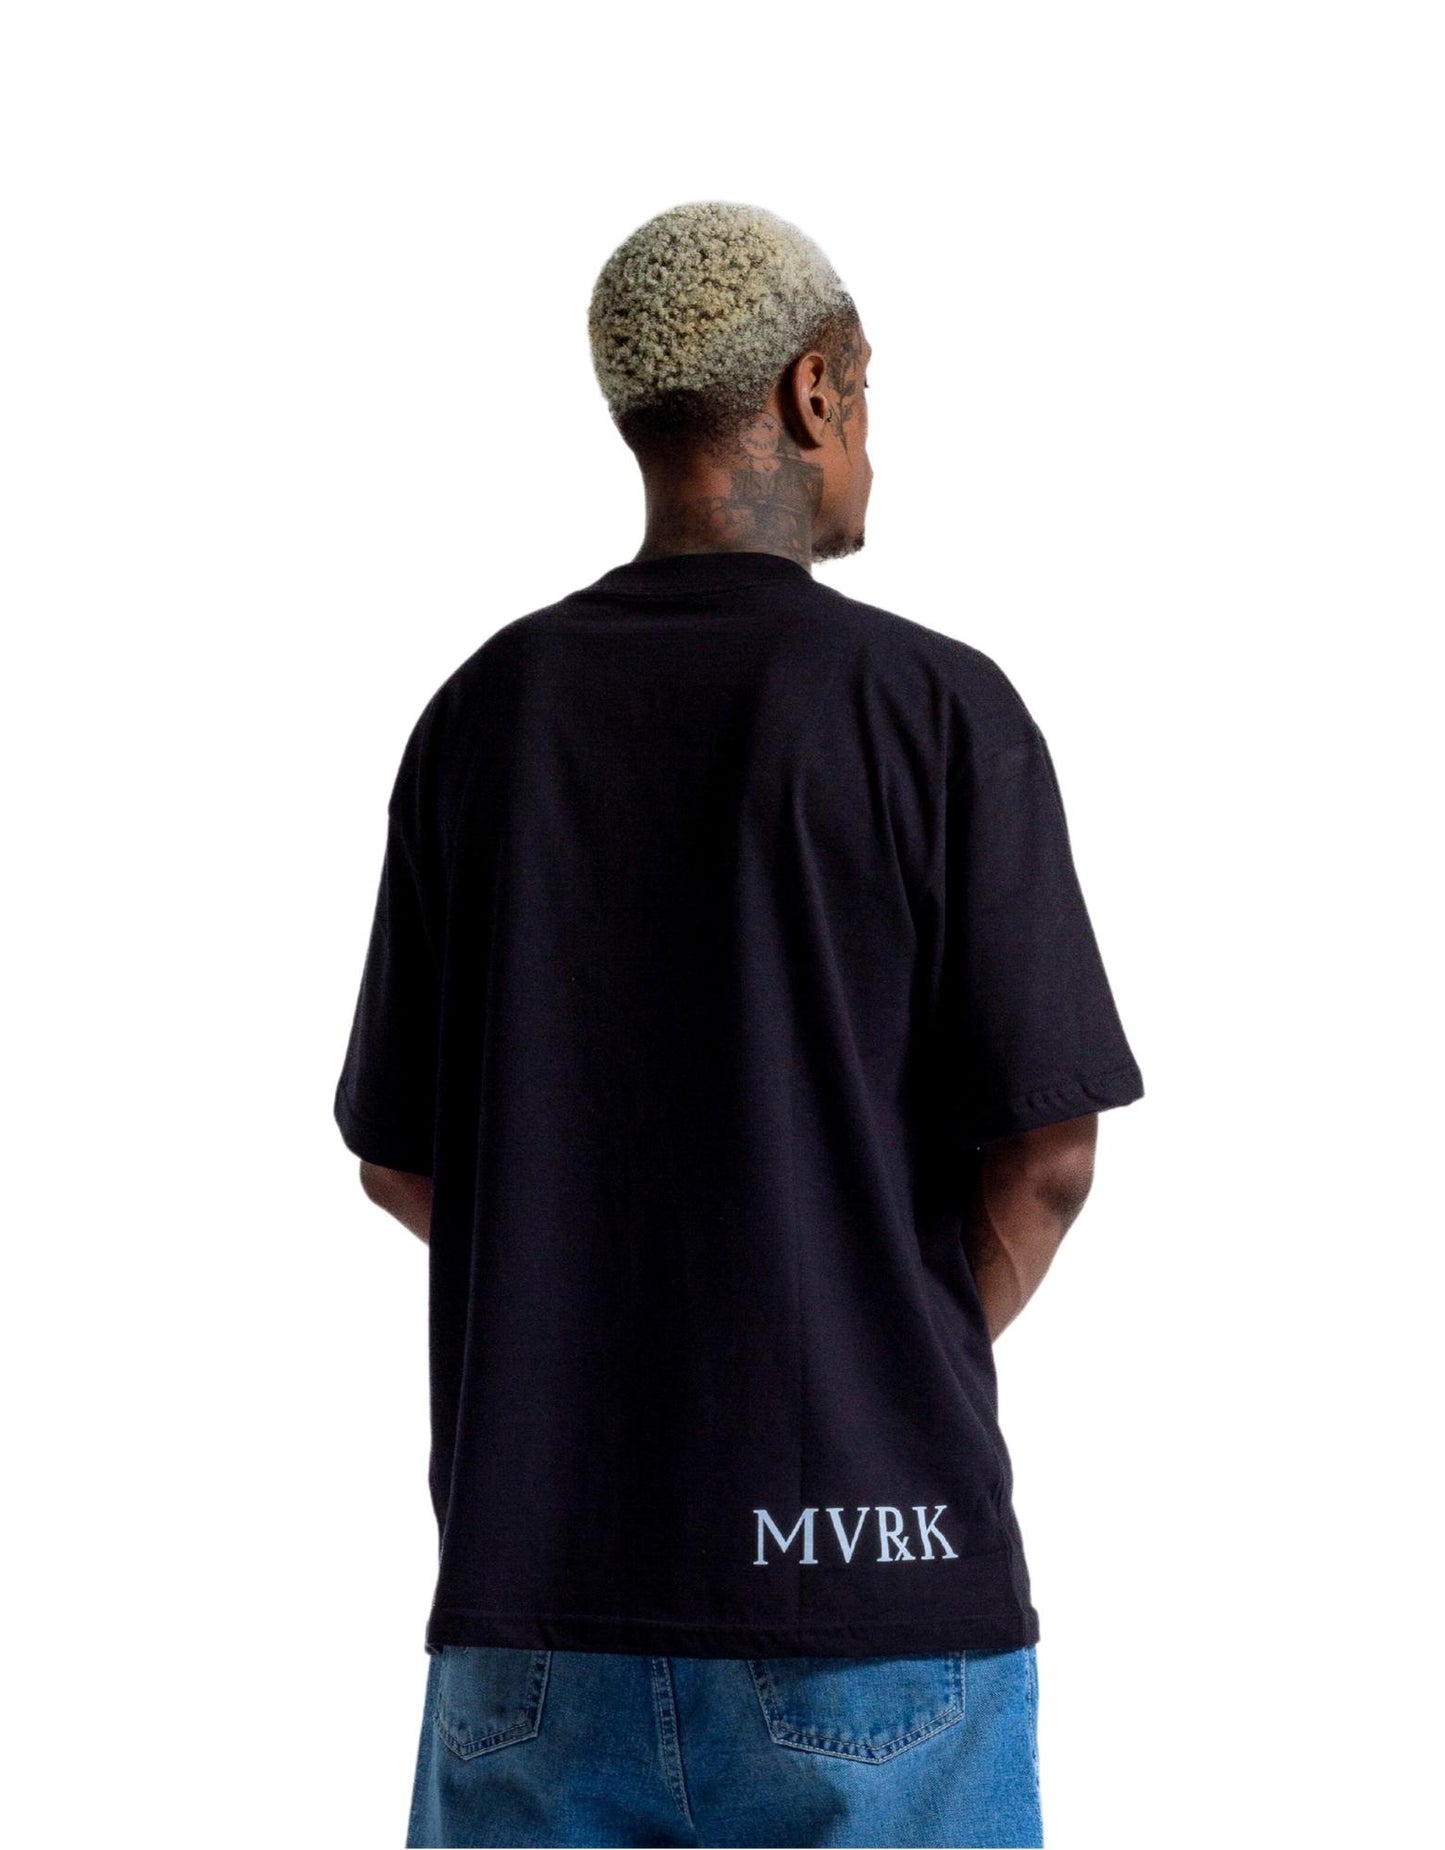 Camiseta Preta MVRK x SABOTAGE 50 Anos